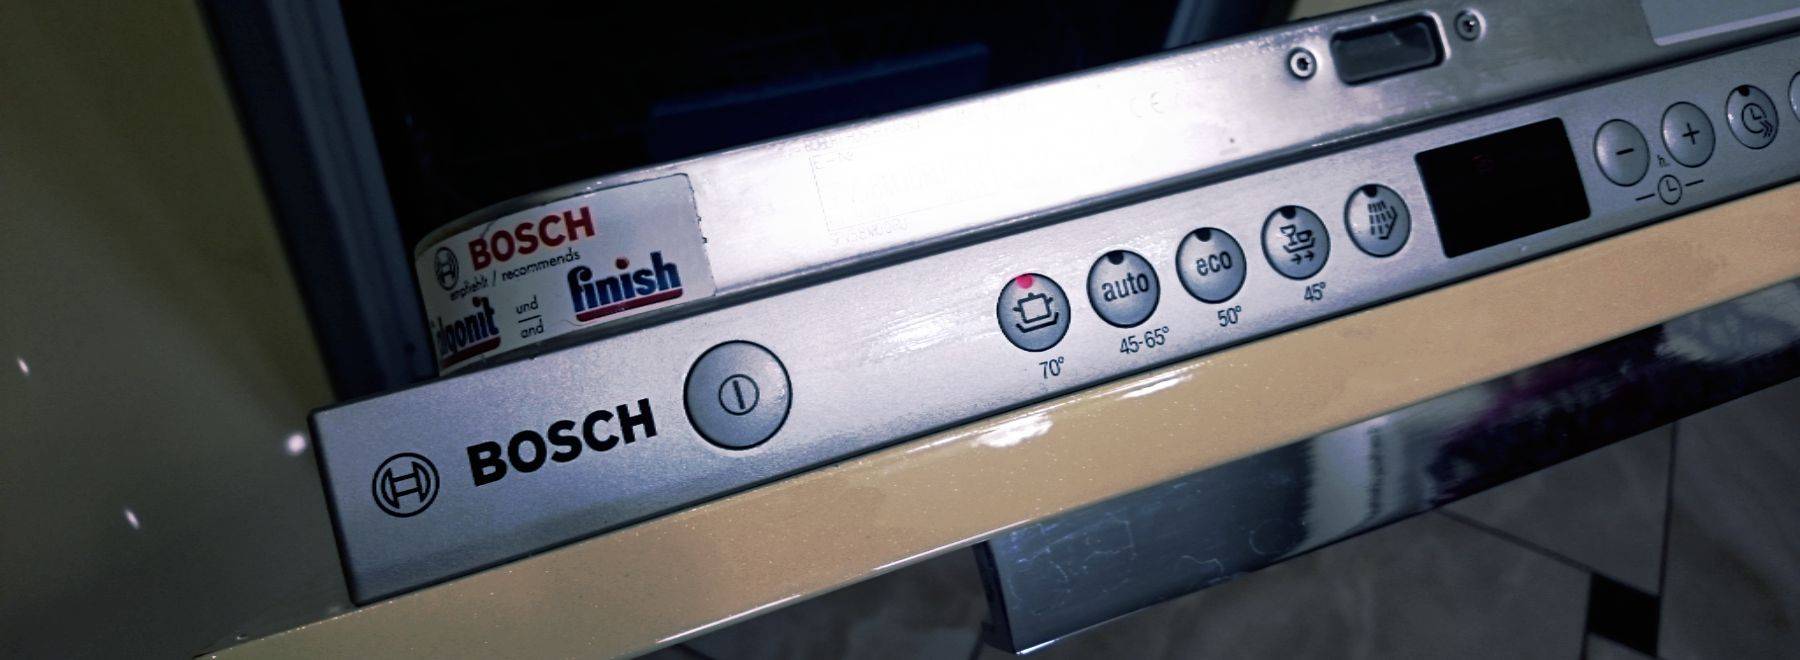 Ошибка е15 в посудомойке бош: что делать с неисправностью машины